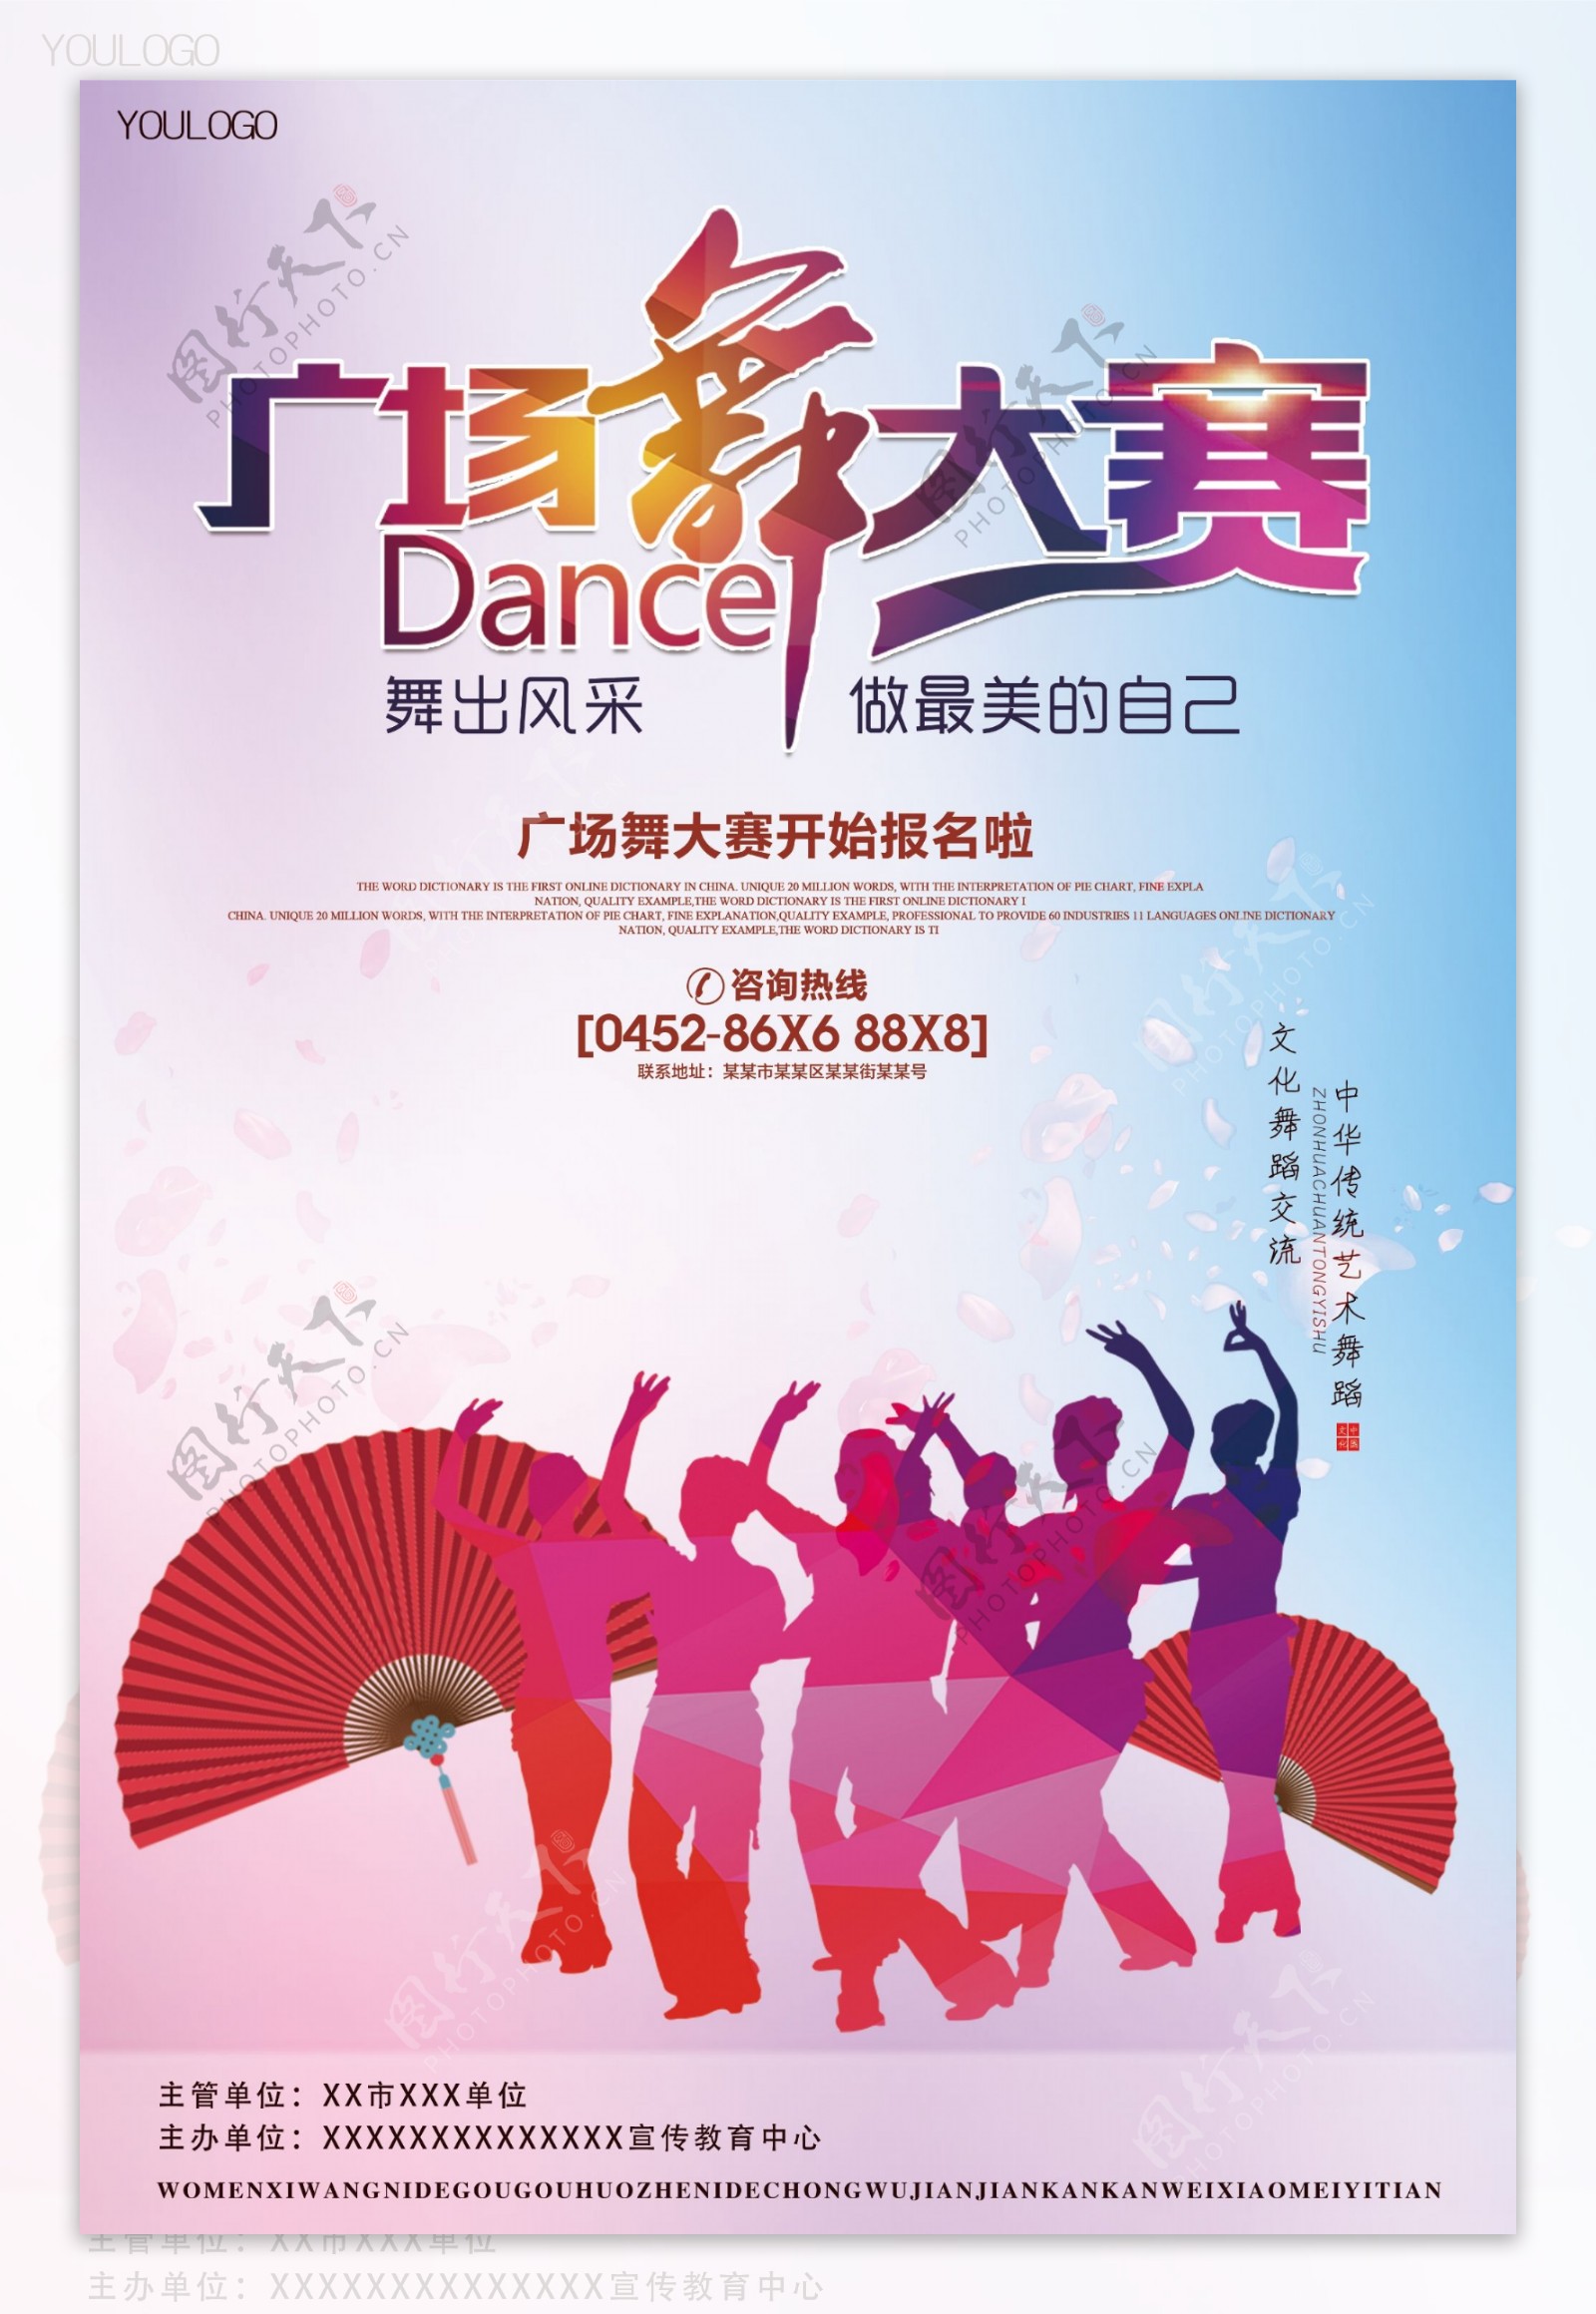 广场舞大赛比赛海报宣传单模板设计